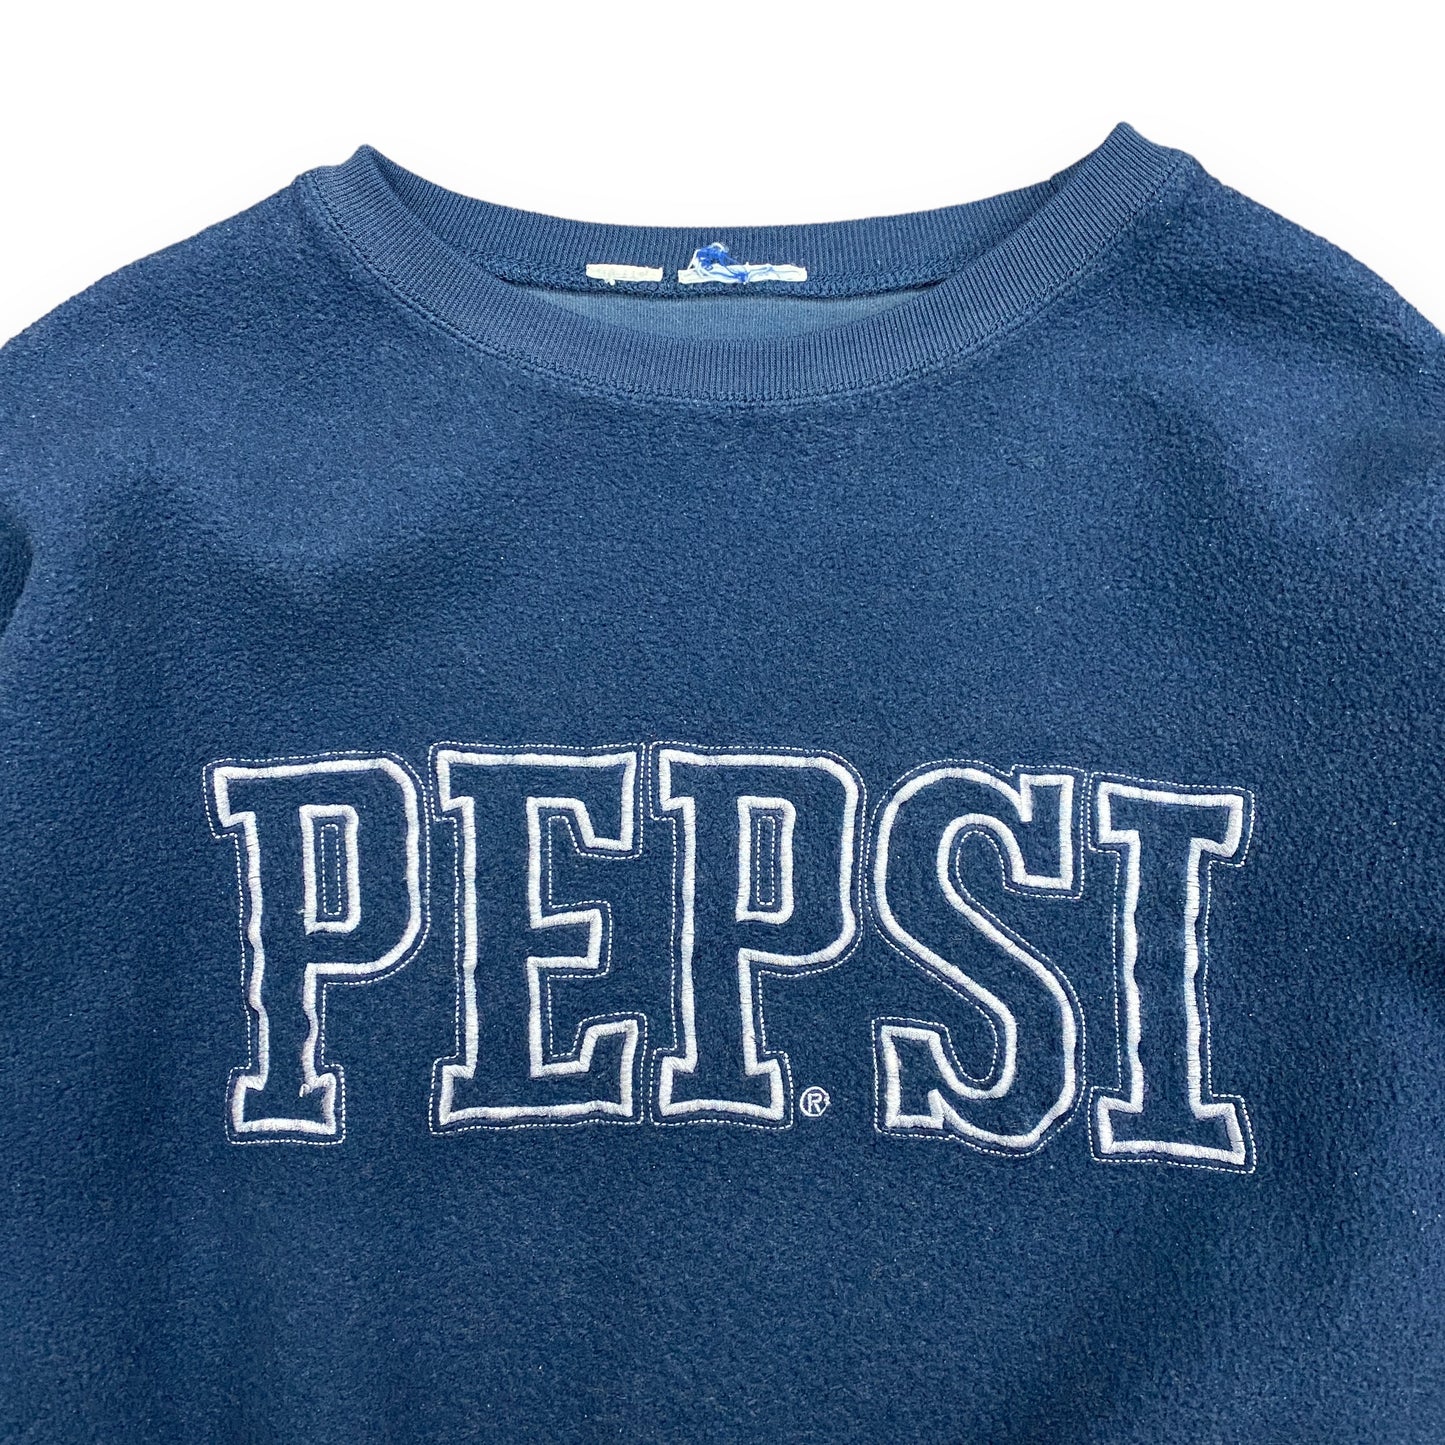 1990s "Pepsi" Navy Blue Fleece Sweatshirt - Size Large